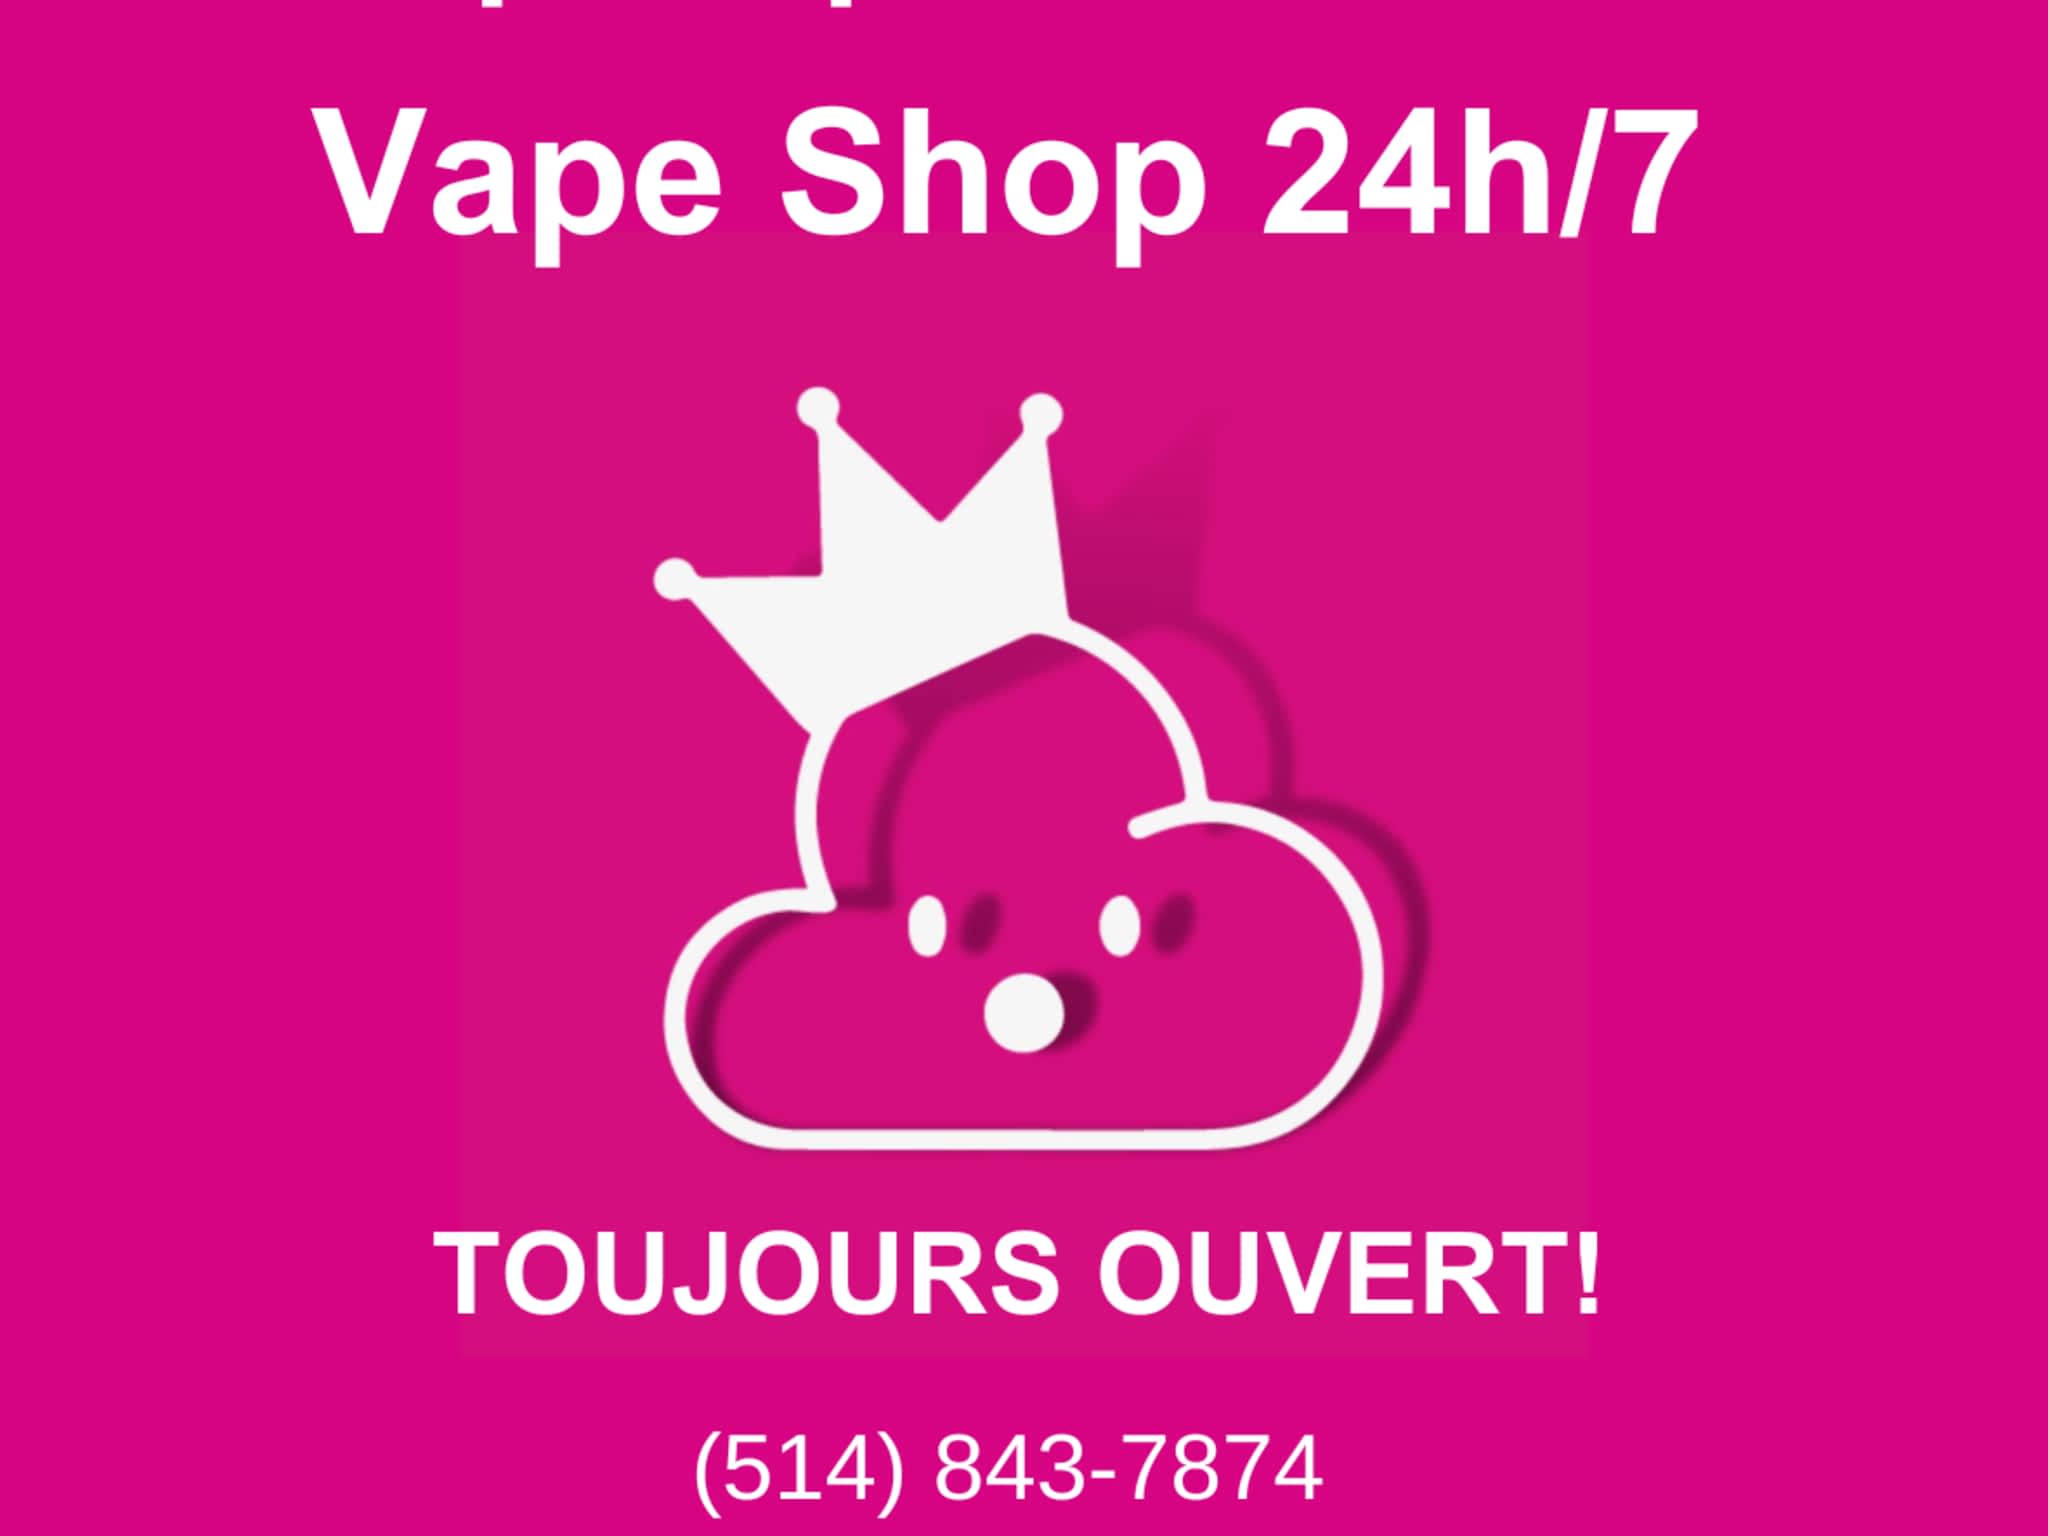 photo Popavape St-Laurent Montreal | Articles pour vapoteurs | Vape Shop